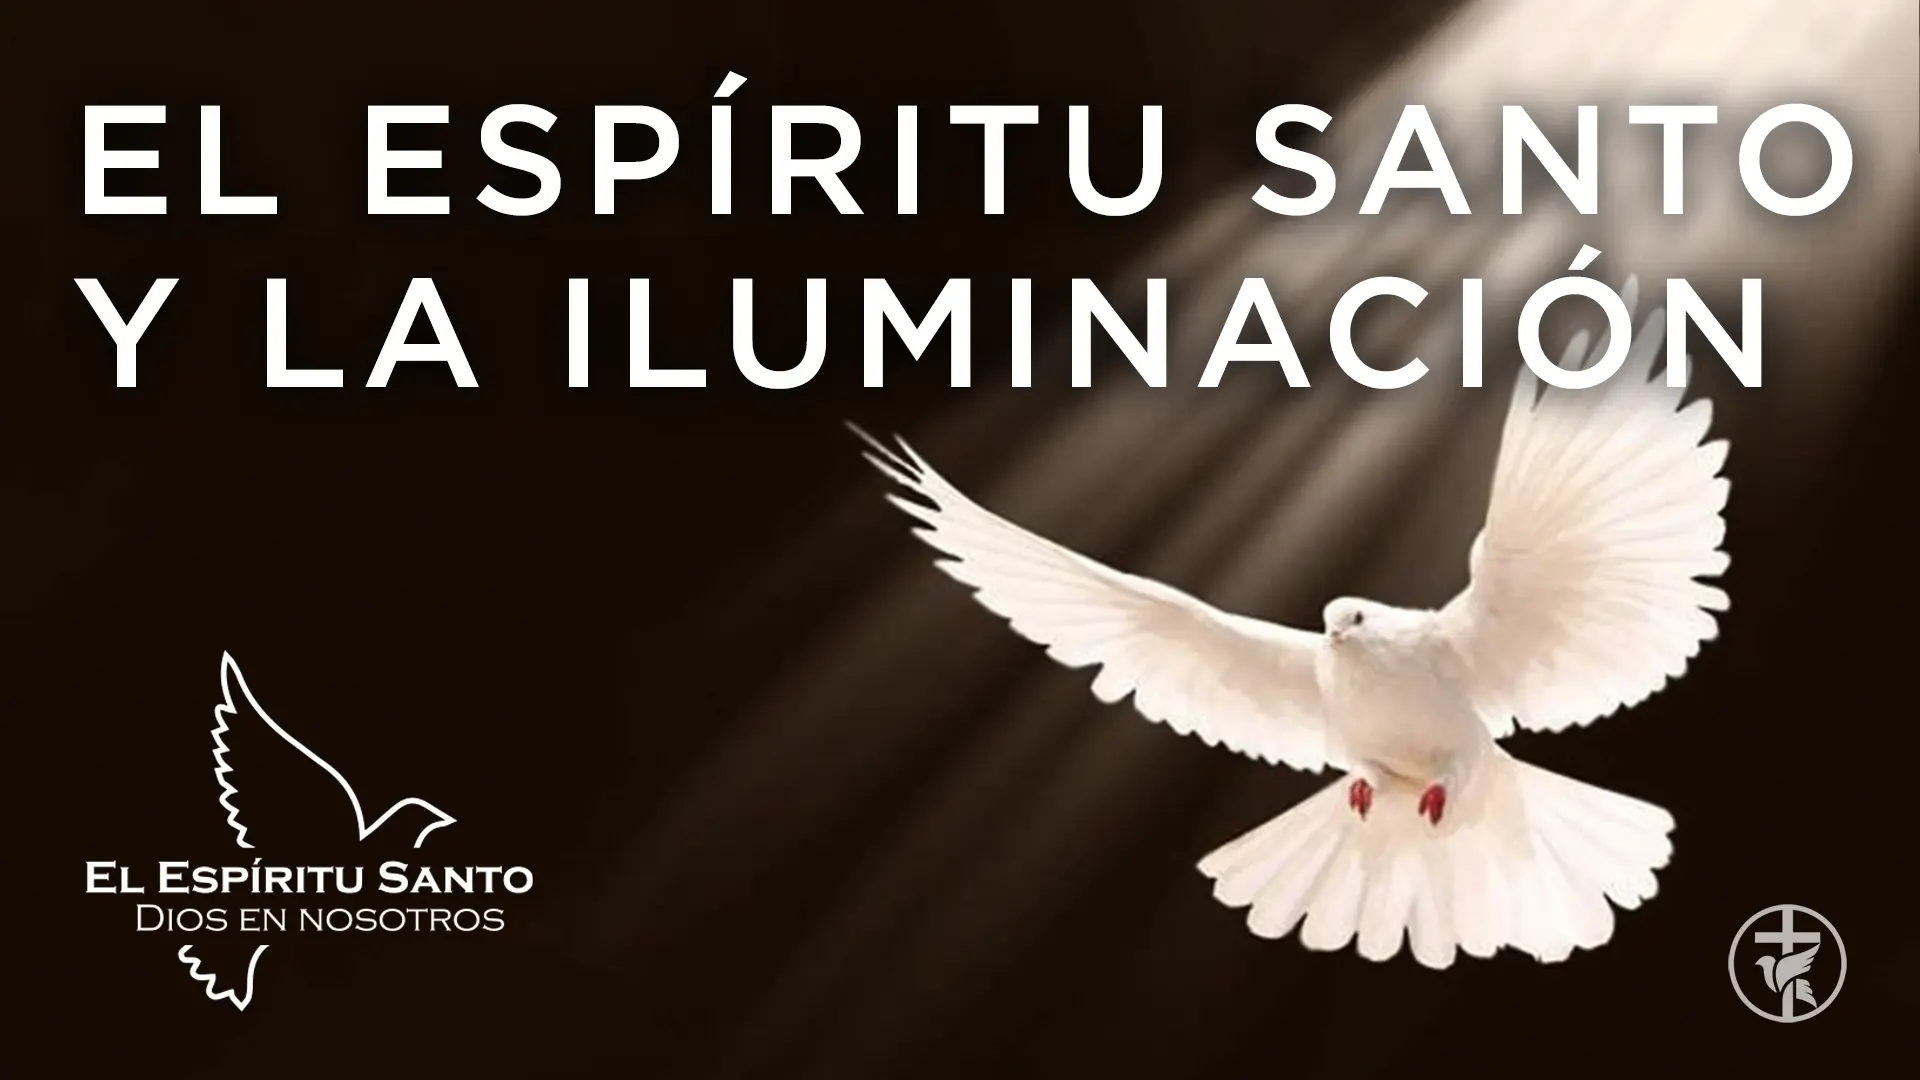 iluminacion del espiritu santo - Cómo se manifiesta la presencia del Espíritu Santo